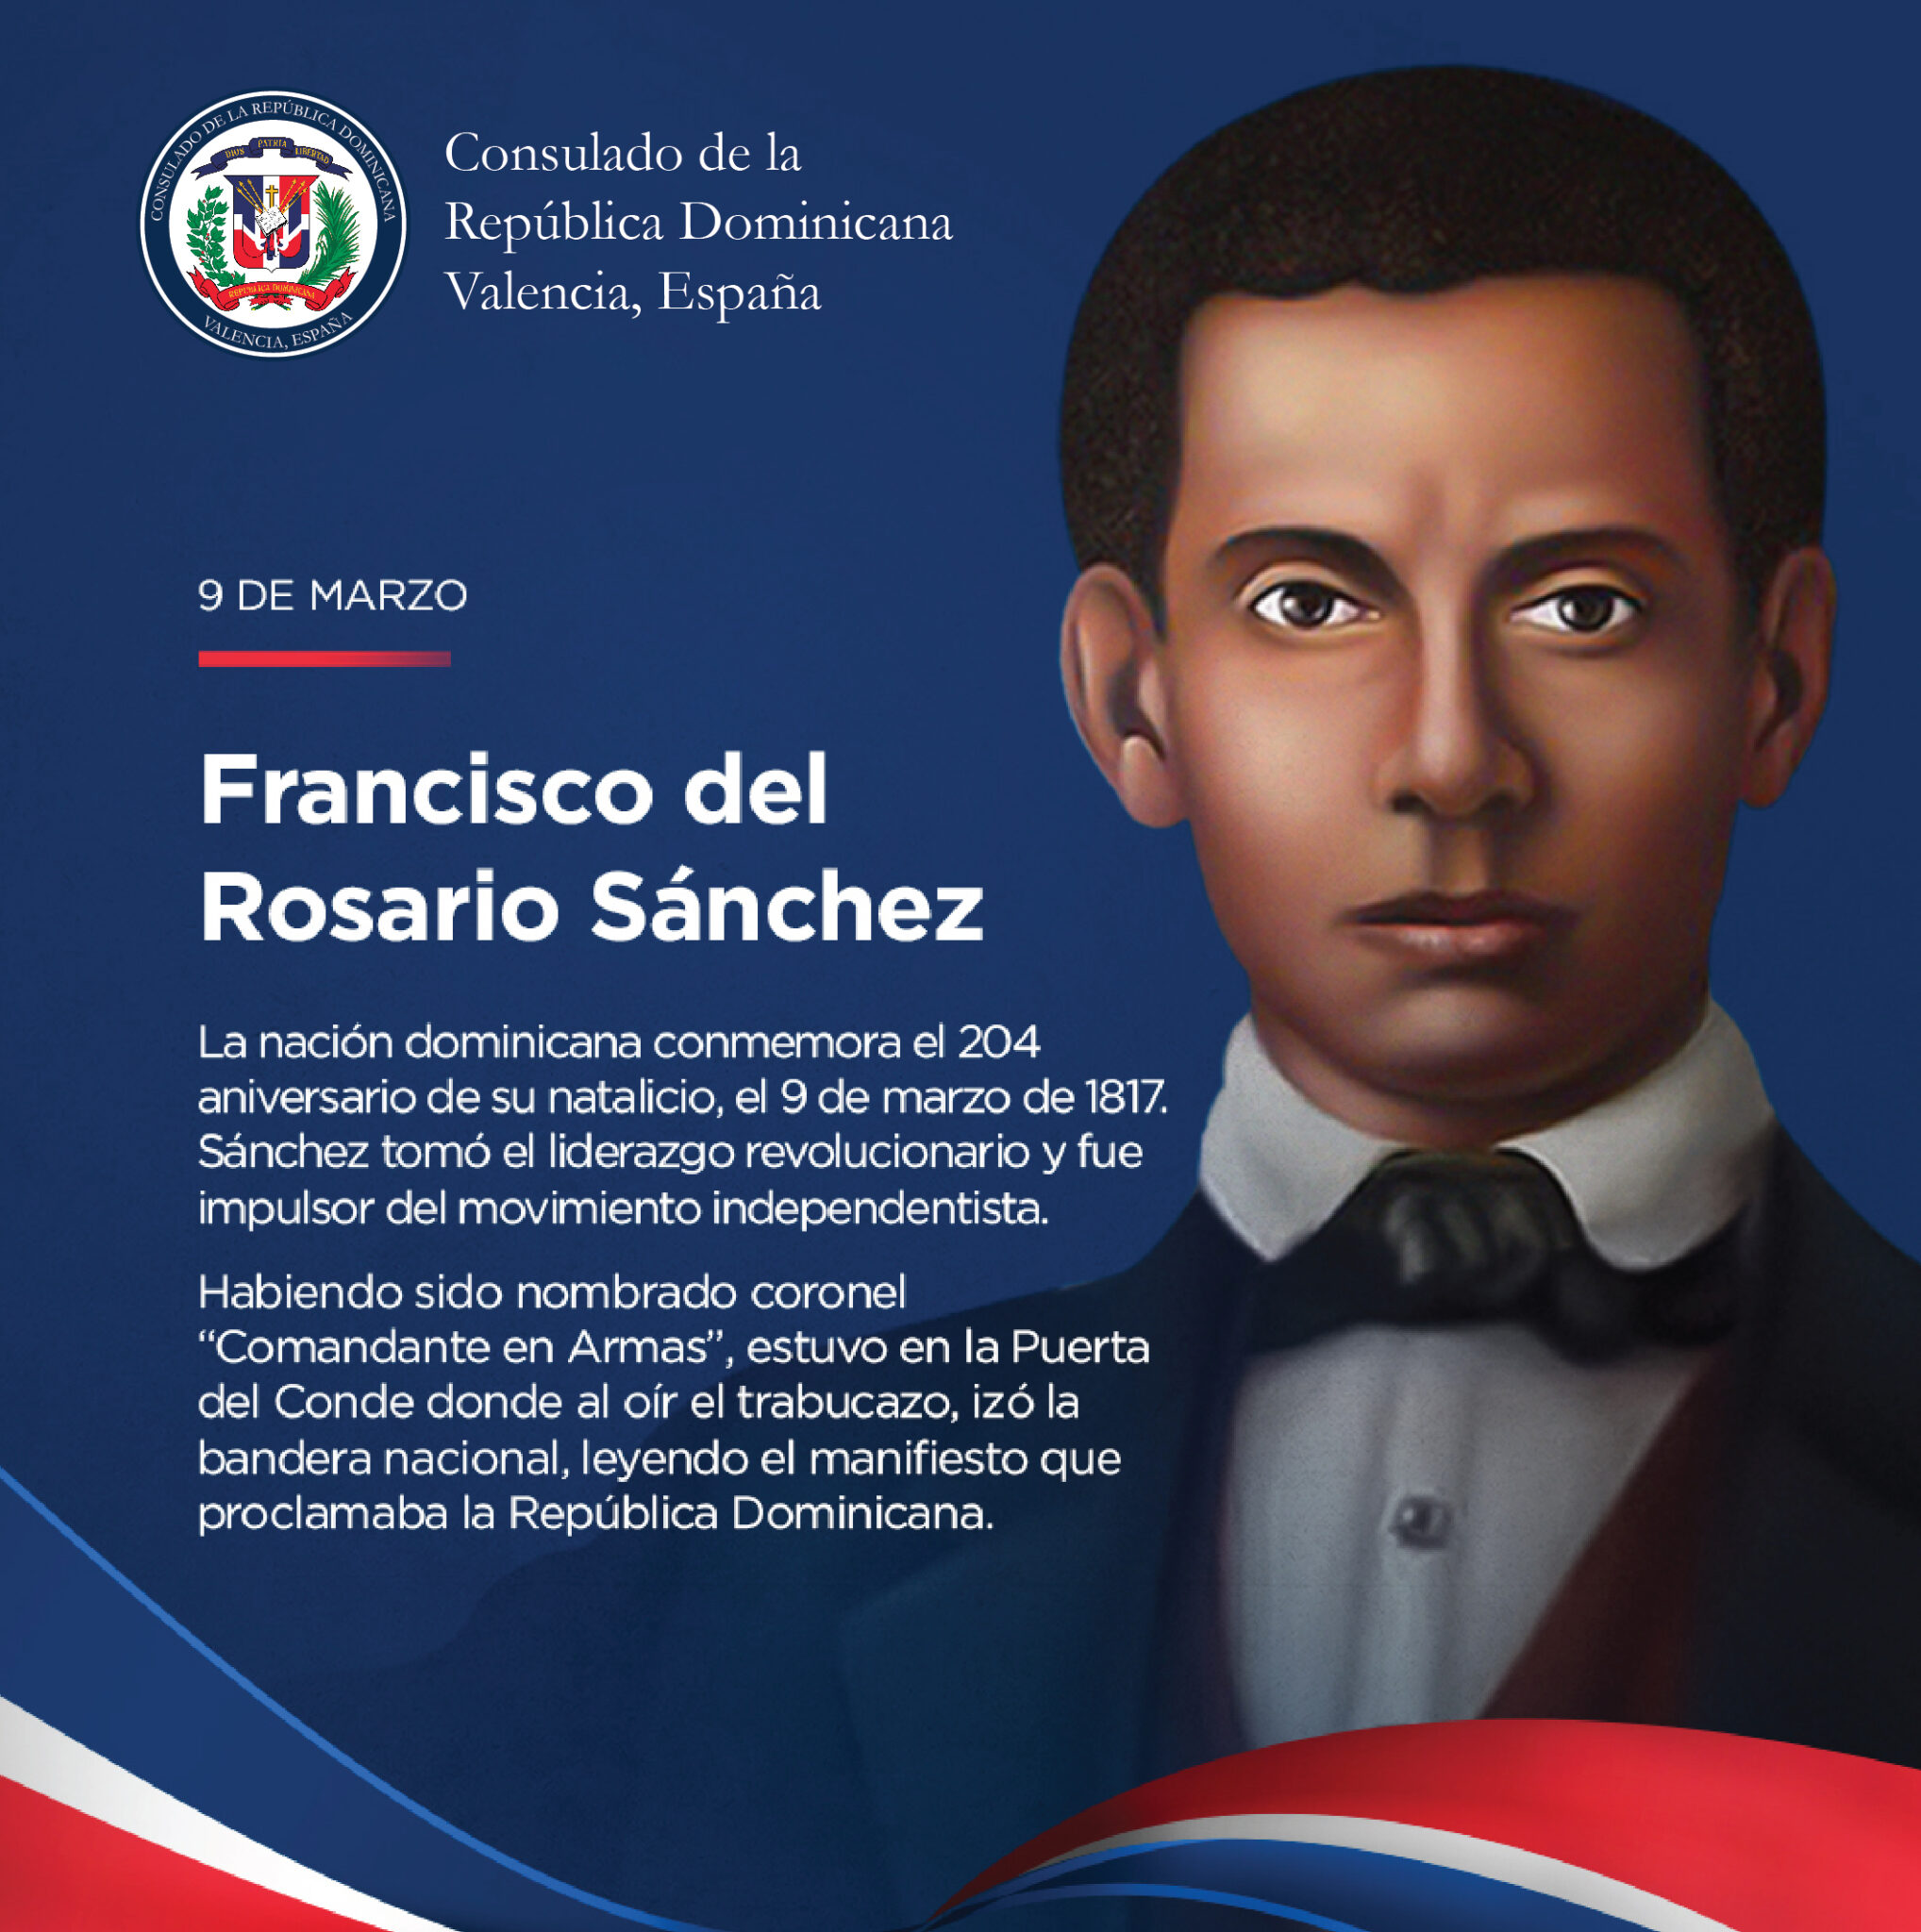 Francisco del Rosario Sánchez Archivos - Consulado de la República